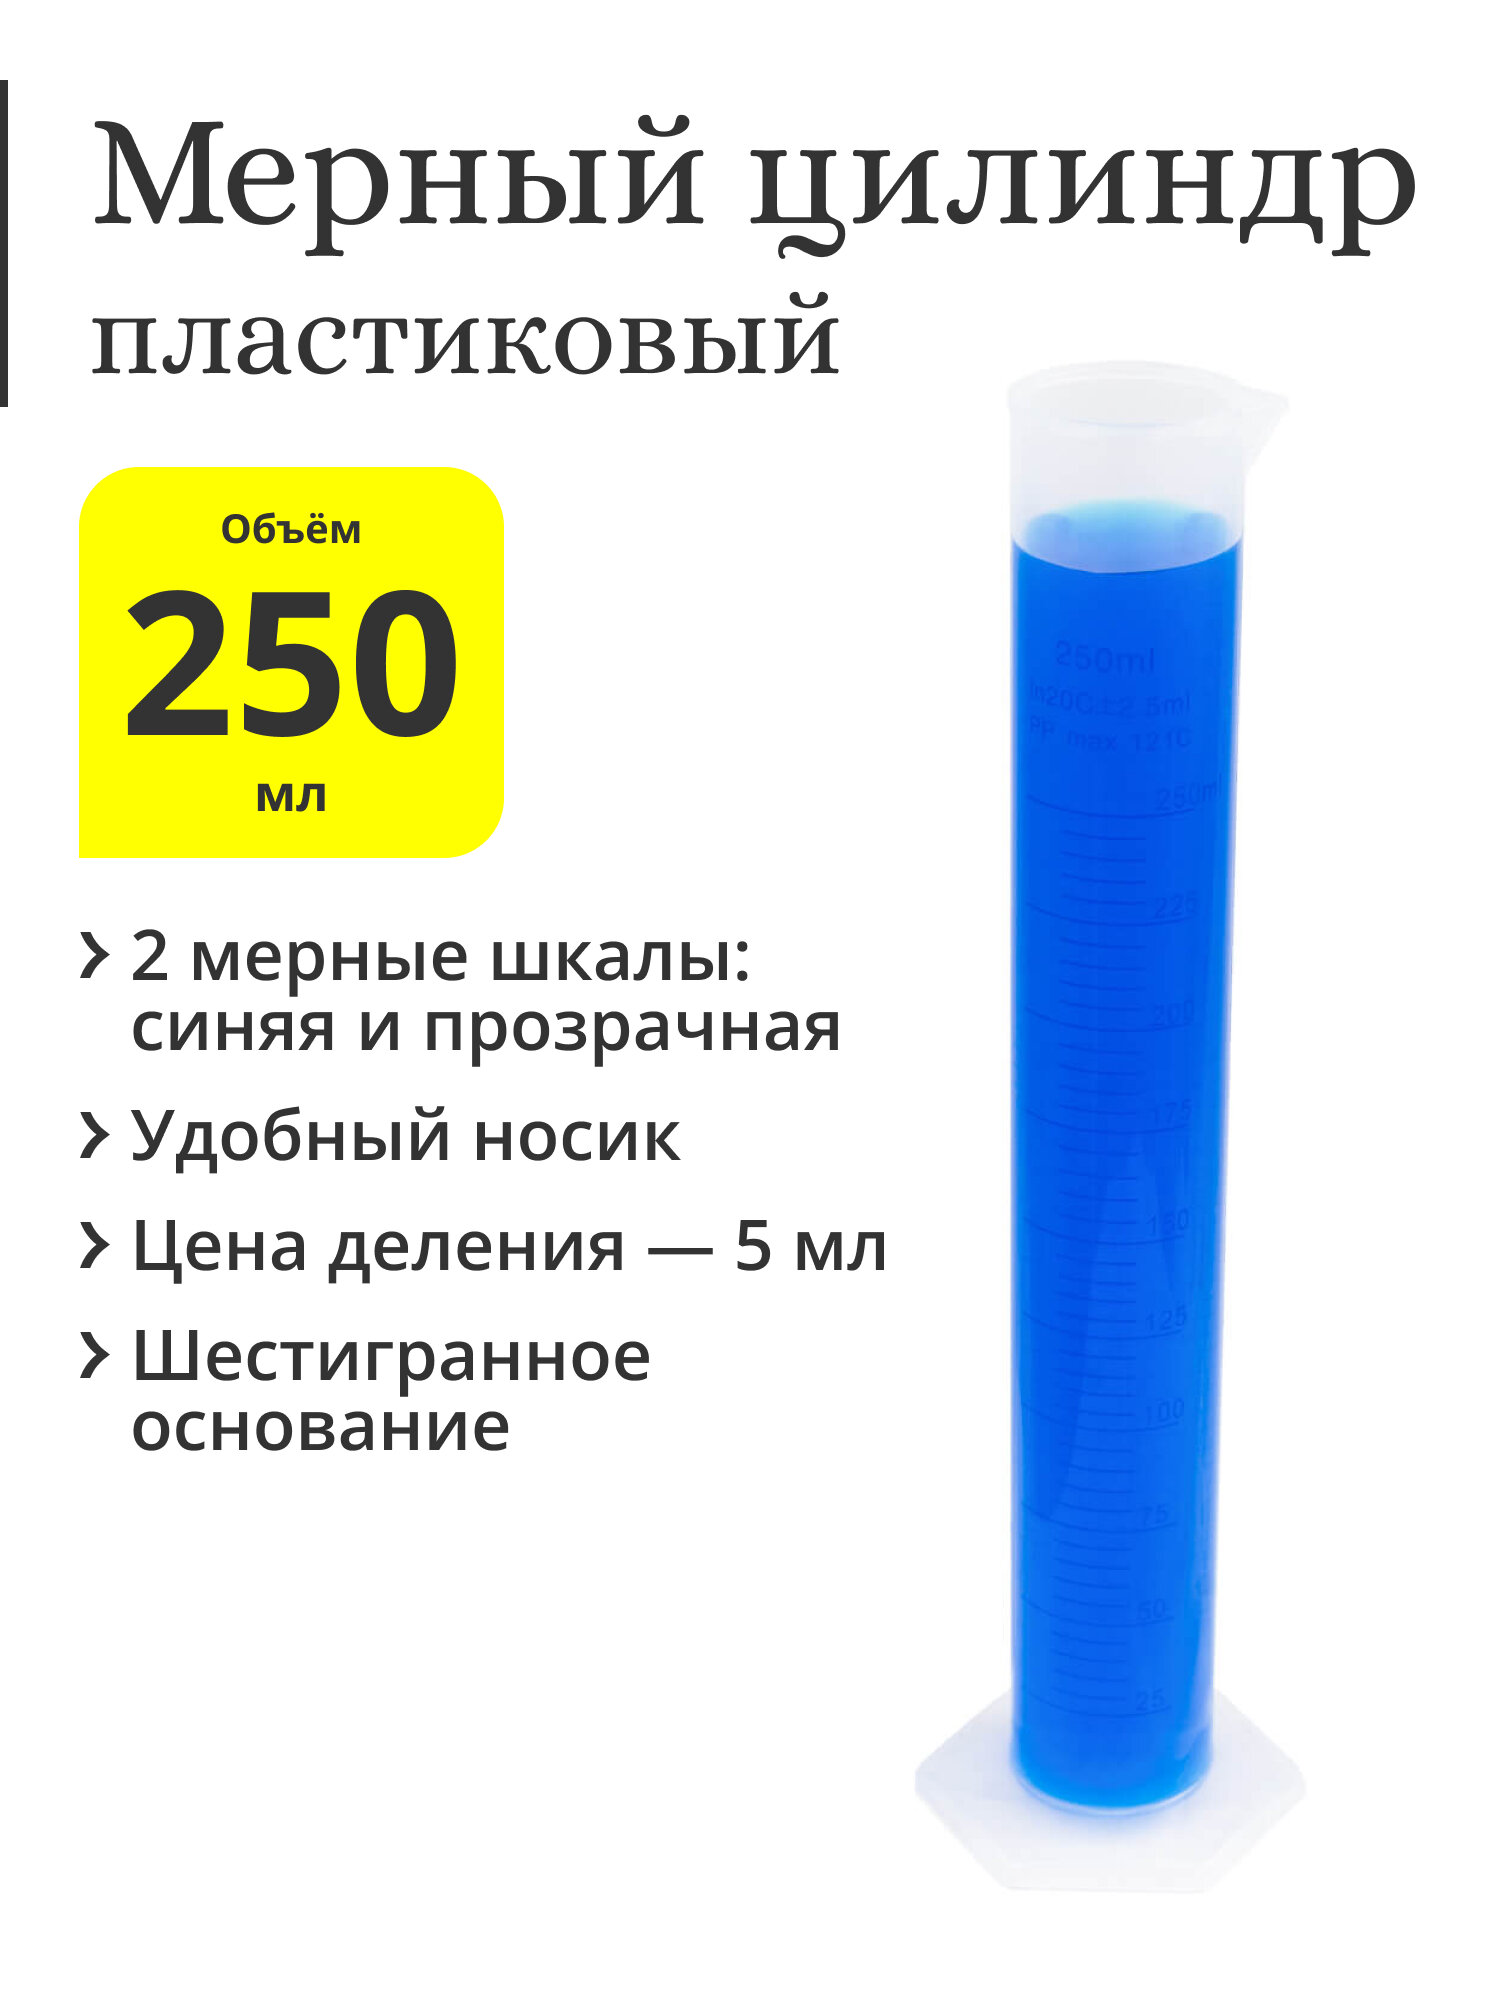 Мерный цилиндр пластиковый, 250 мл, синяя шкала